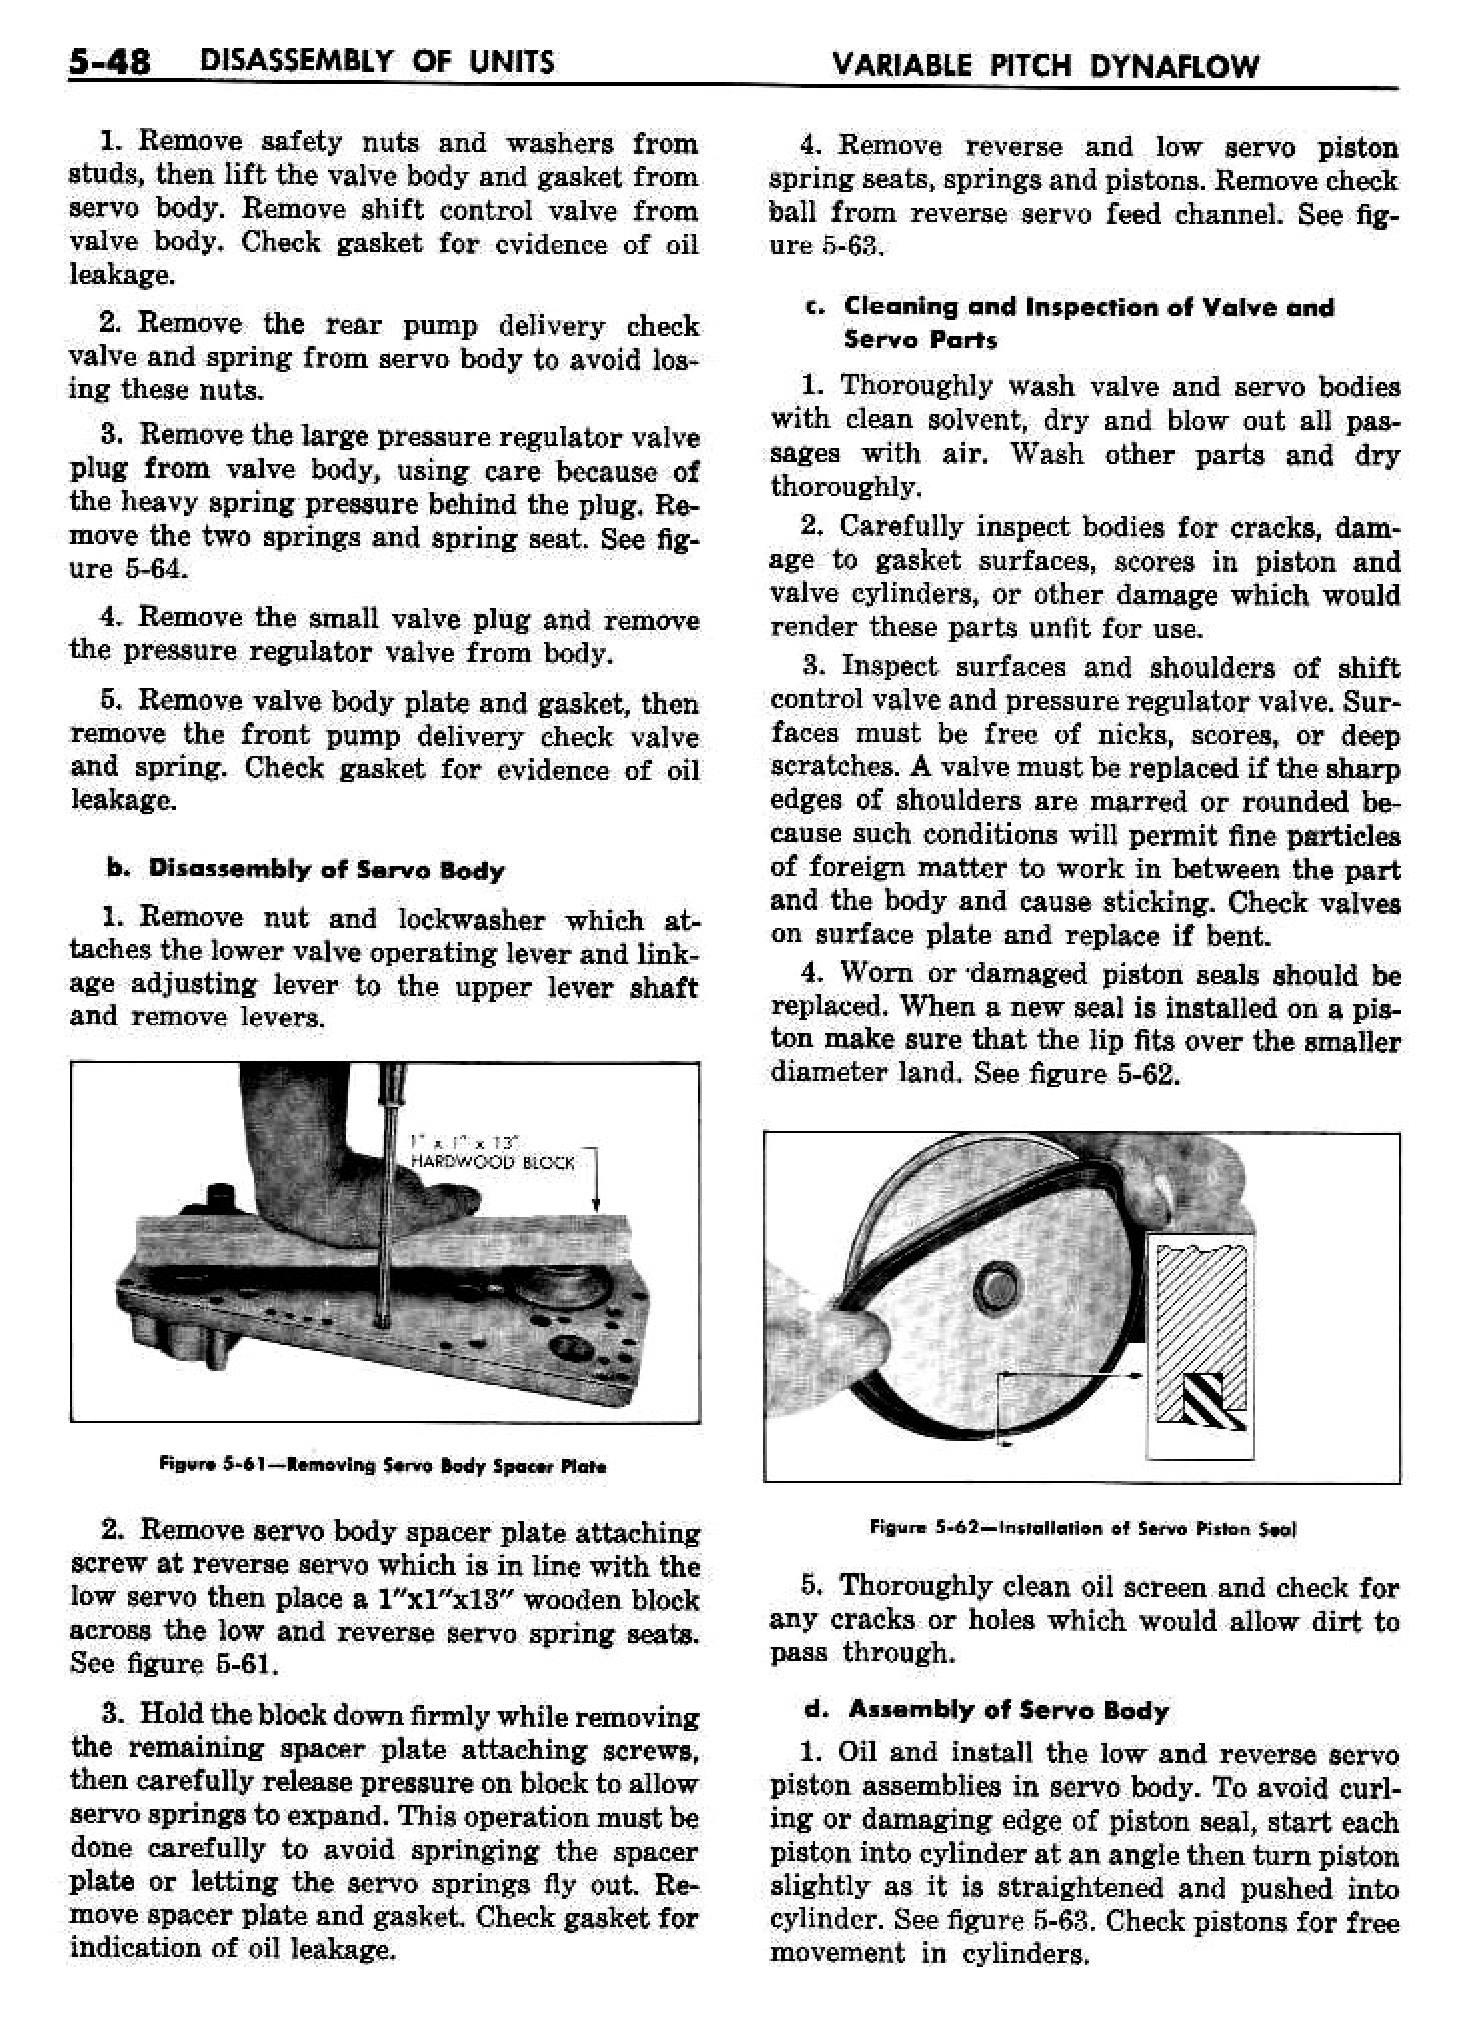 n_06 1958 Buick Shop Manual - Dynaflow_48.jpg